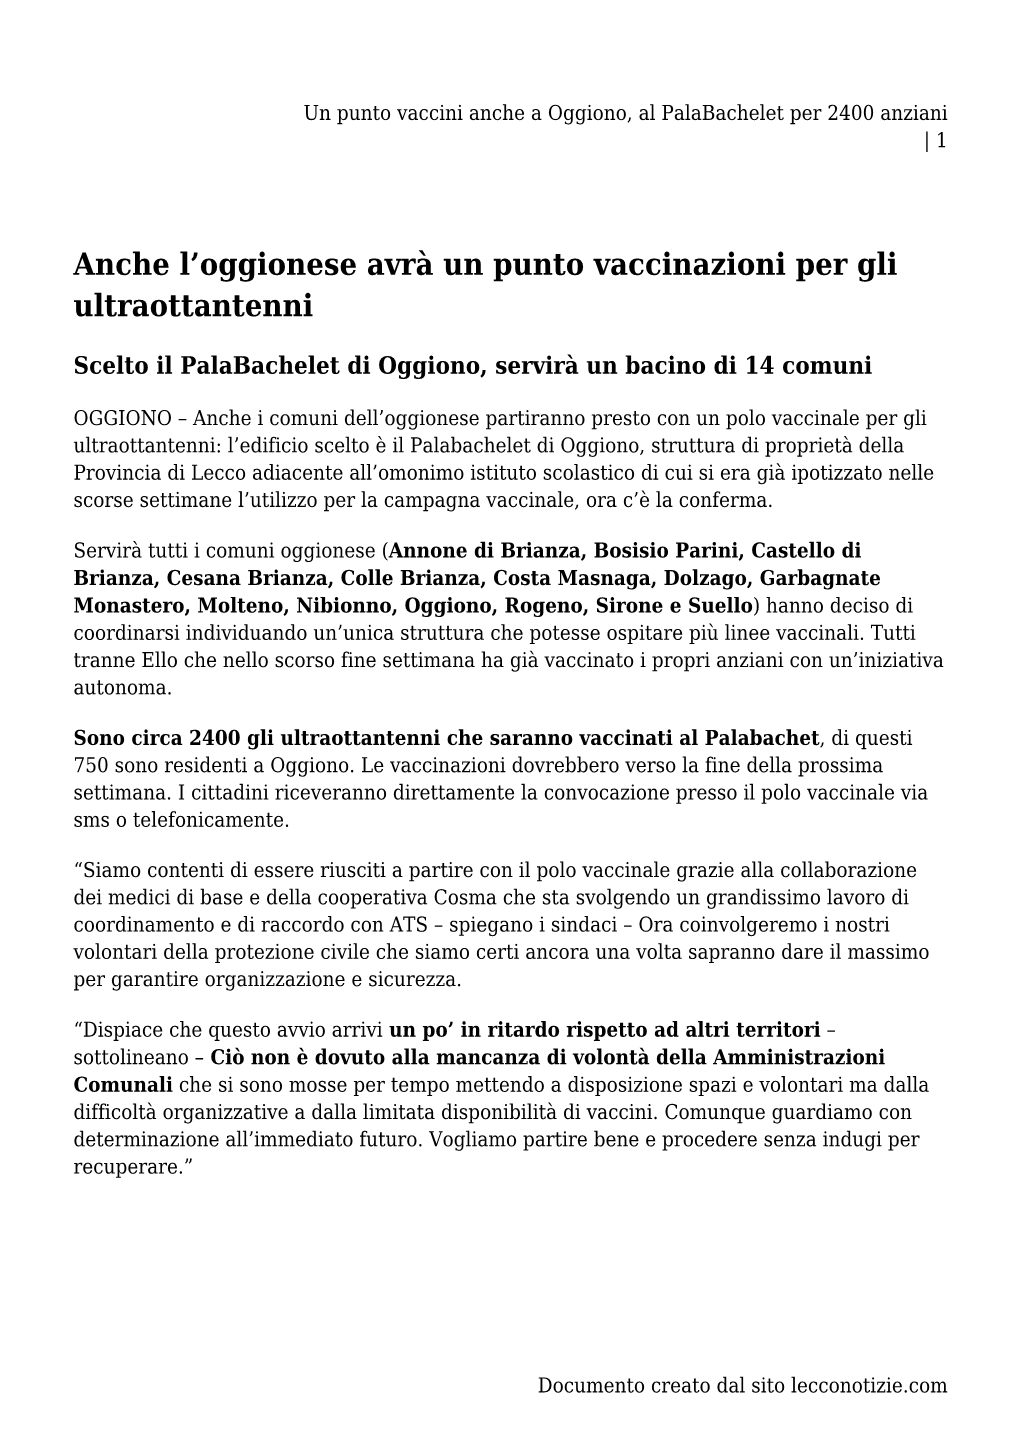 Un Punto Vaccini Anche a Oggiono, Al Palabachelet Per 2400 Anziani | 1